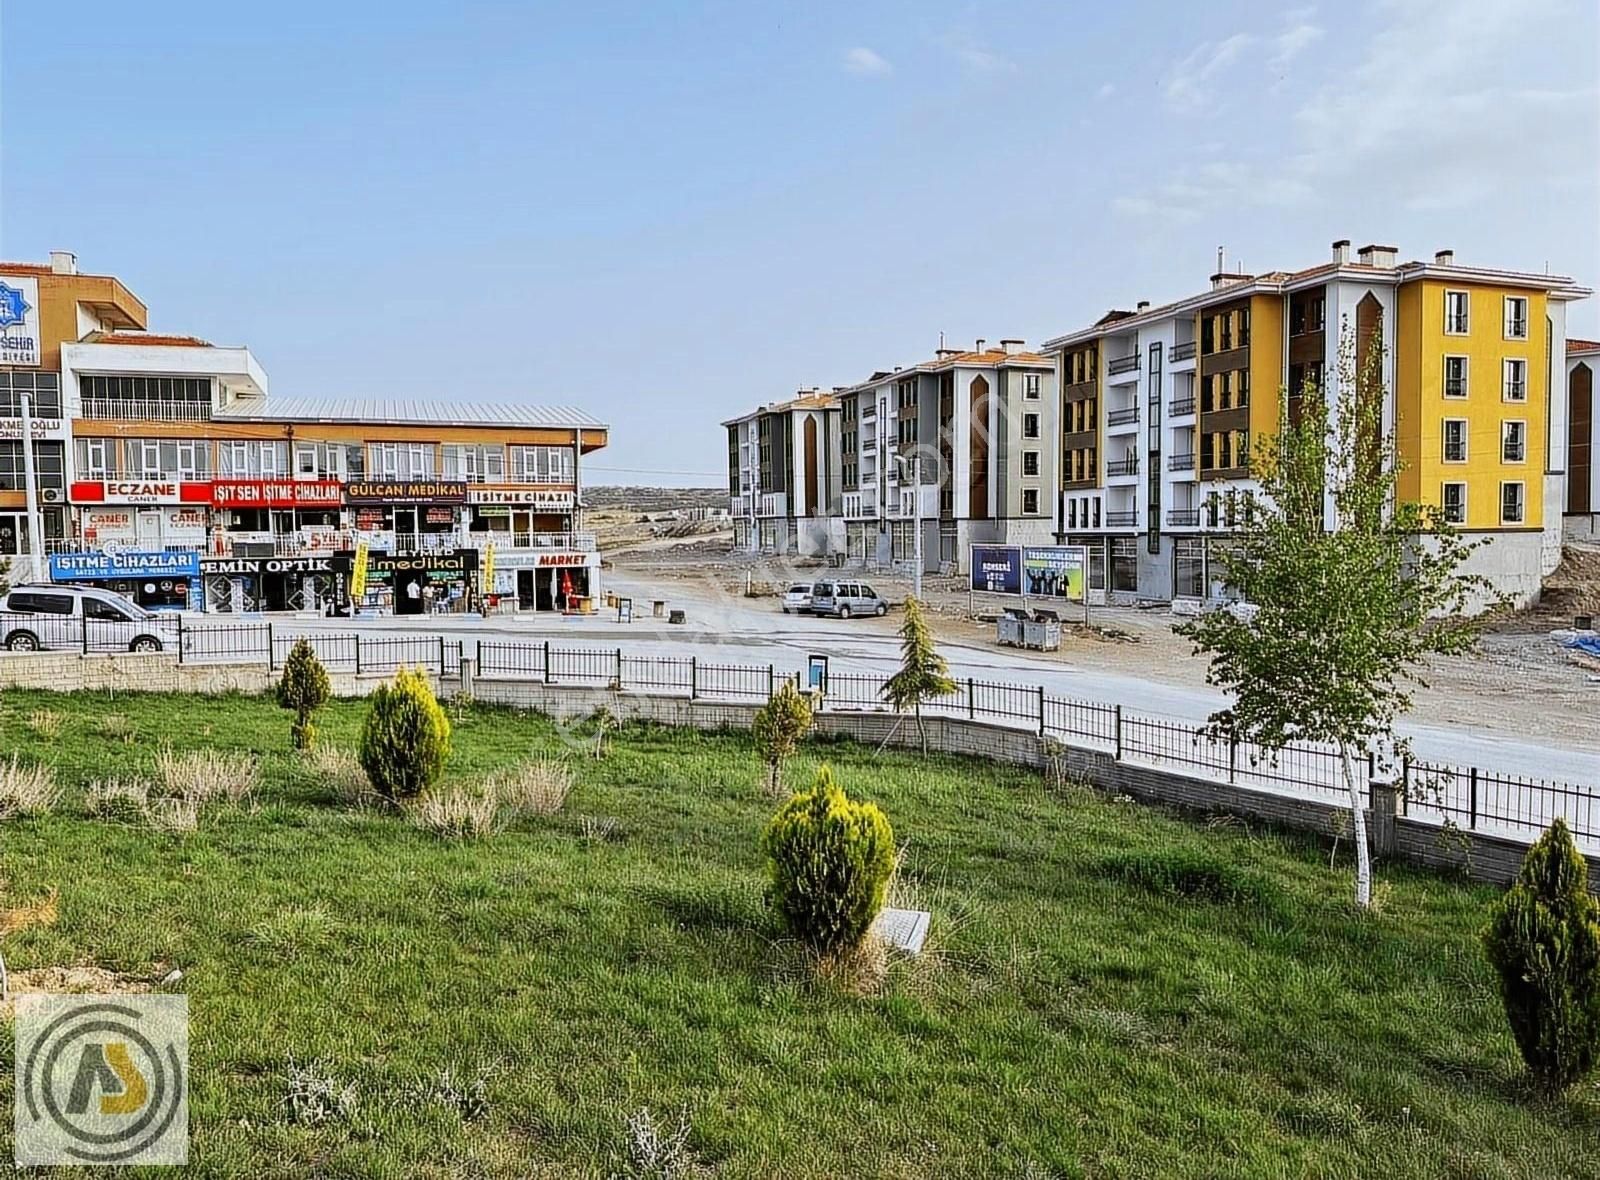 Beyşehir Beytepe Satılık Dükkan & Mağaza YENİ HASTANE KARŞISI 50M2 DÜKKAN